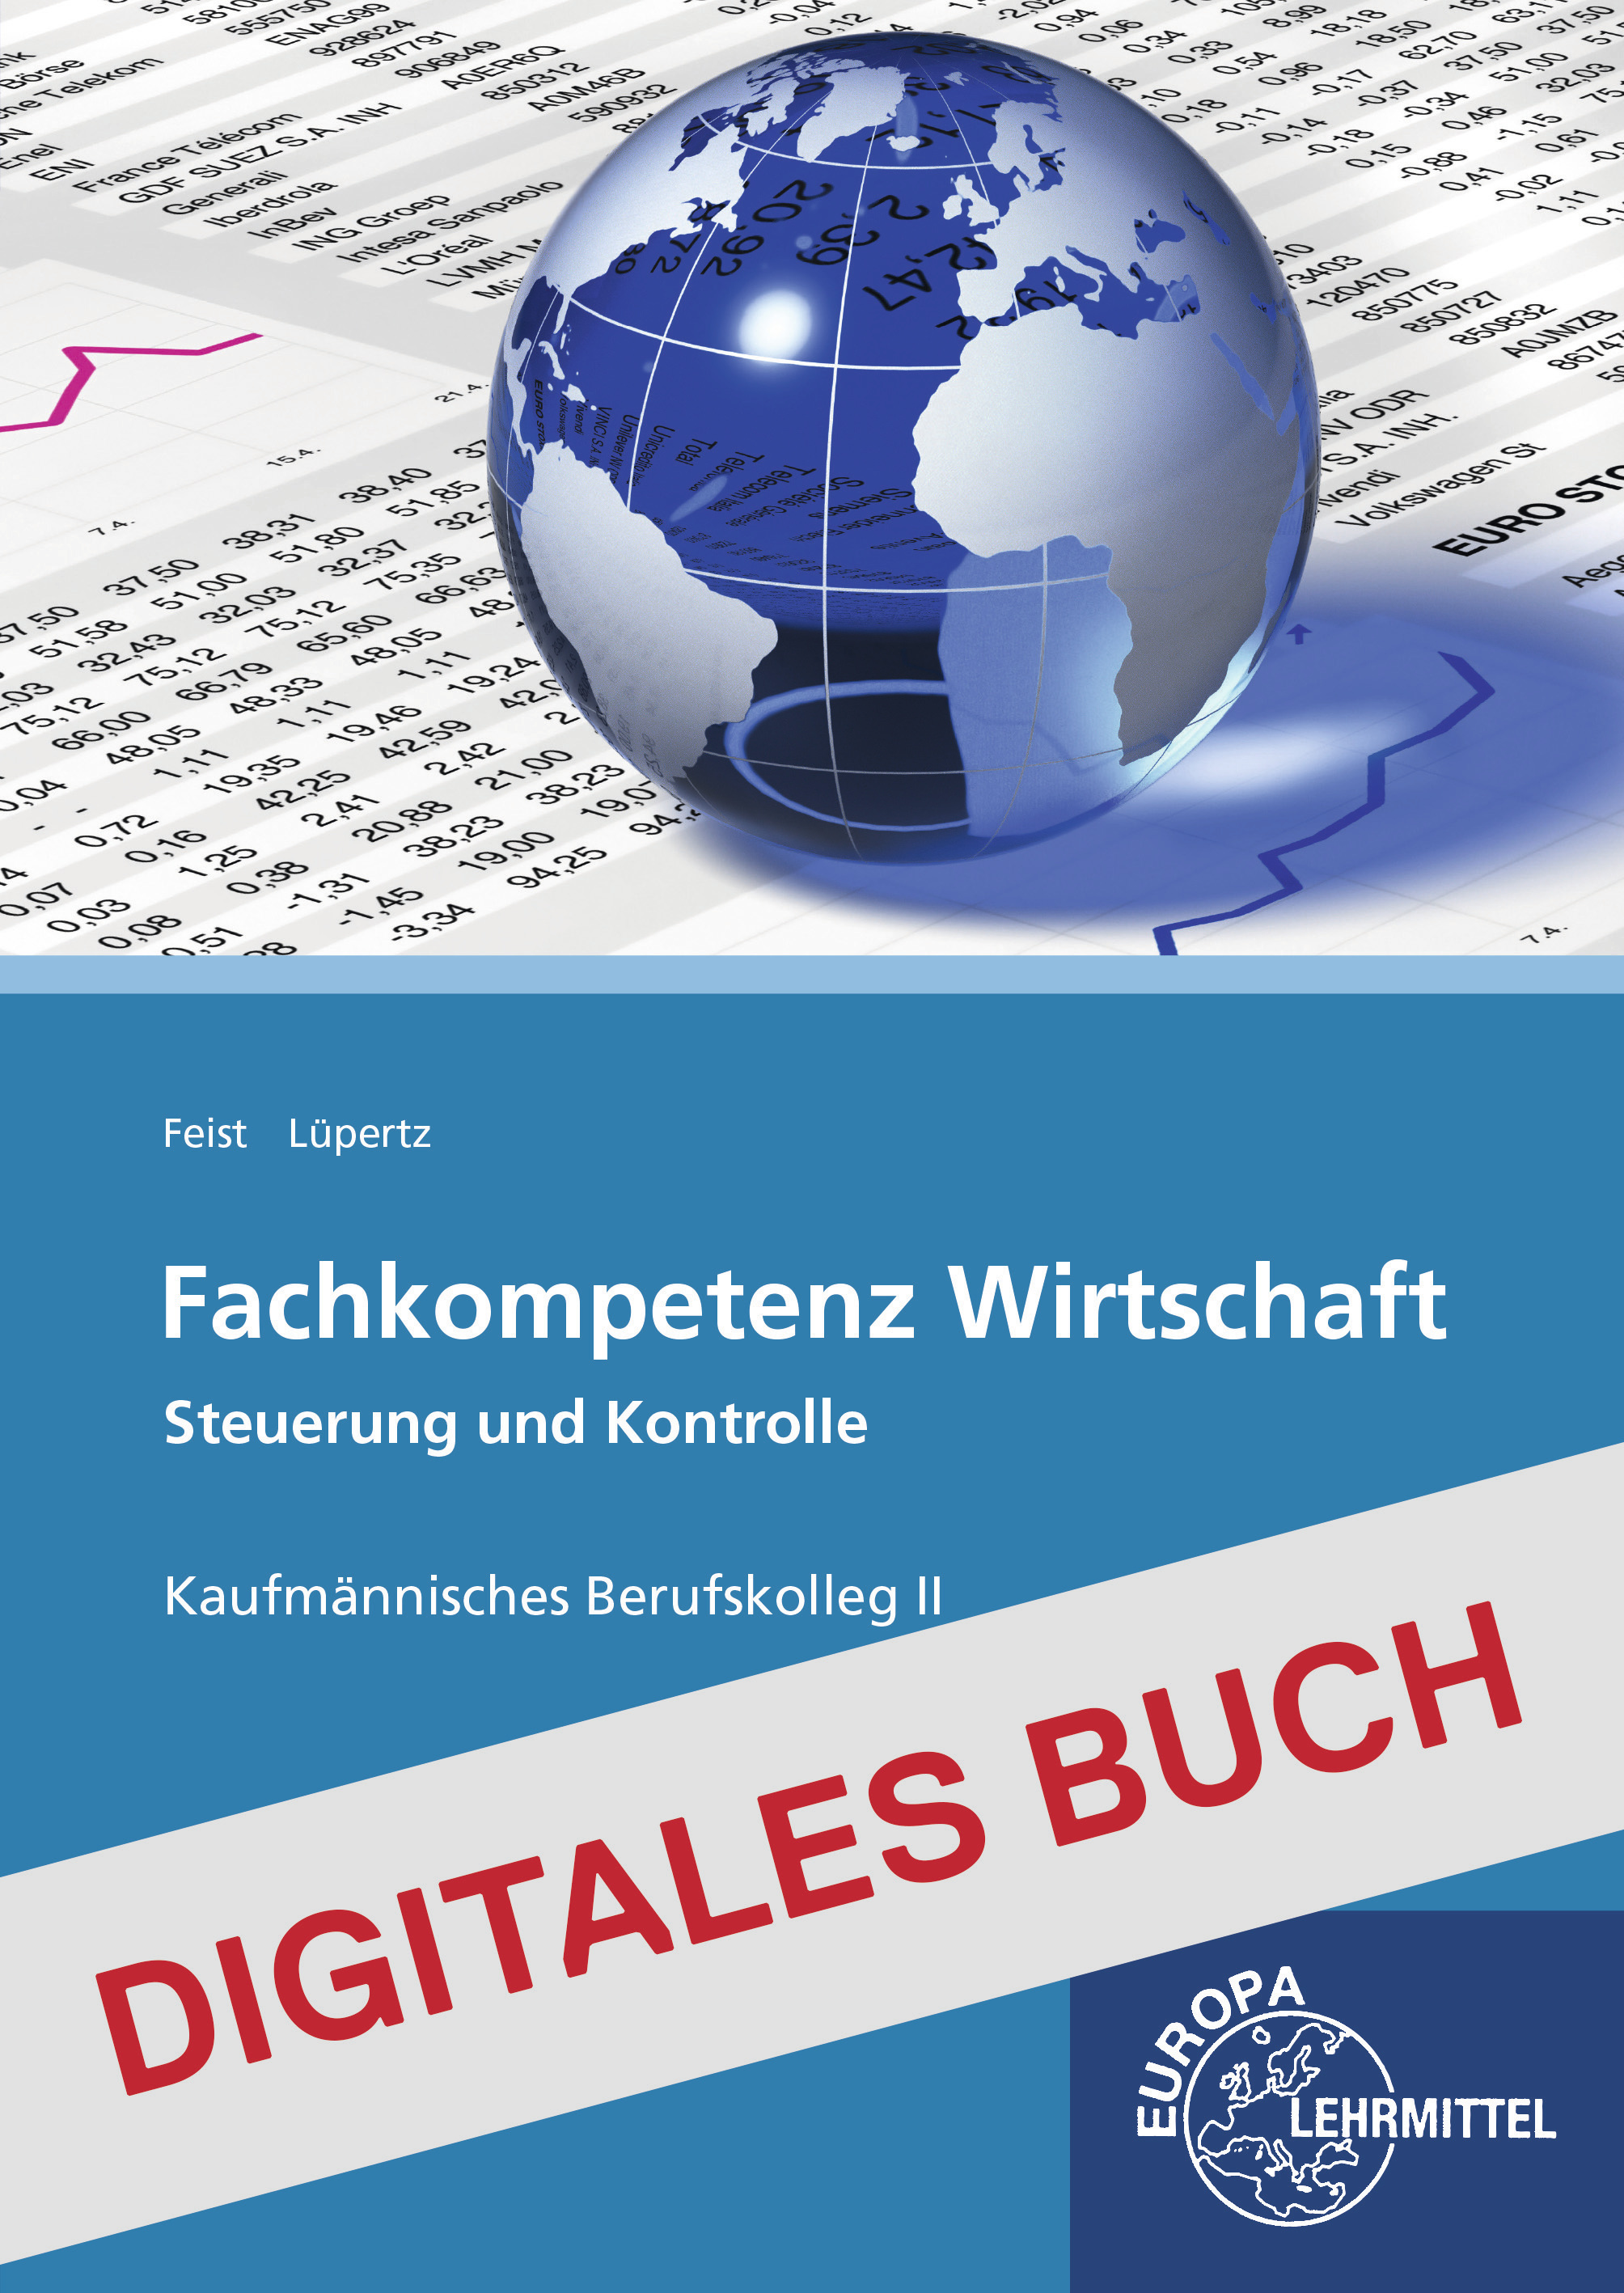 Fachkompetenz Wirtschaft - Steuerung und Kontrolle BK II Digitales Buch